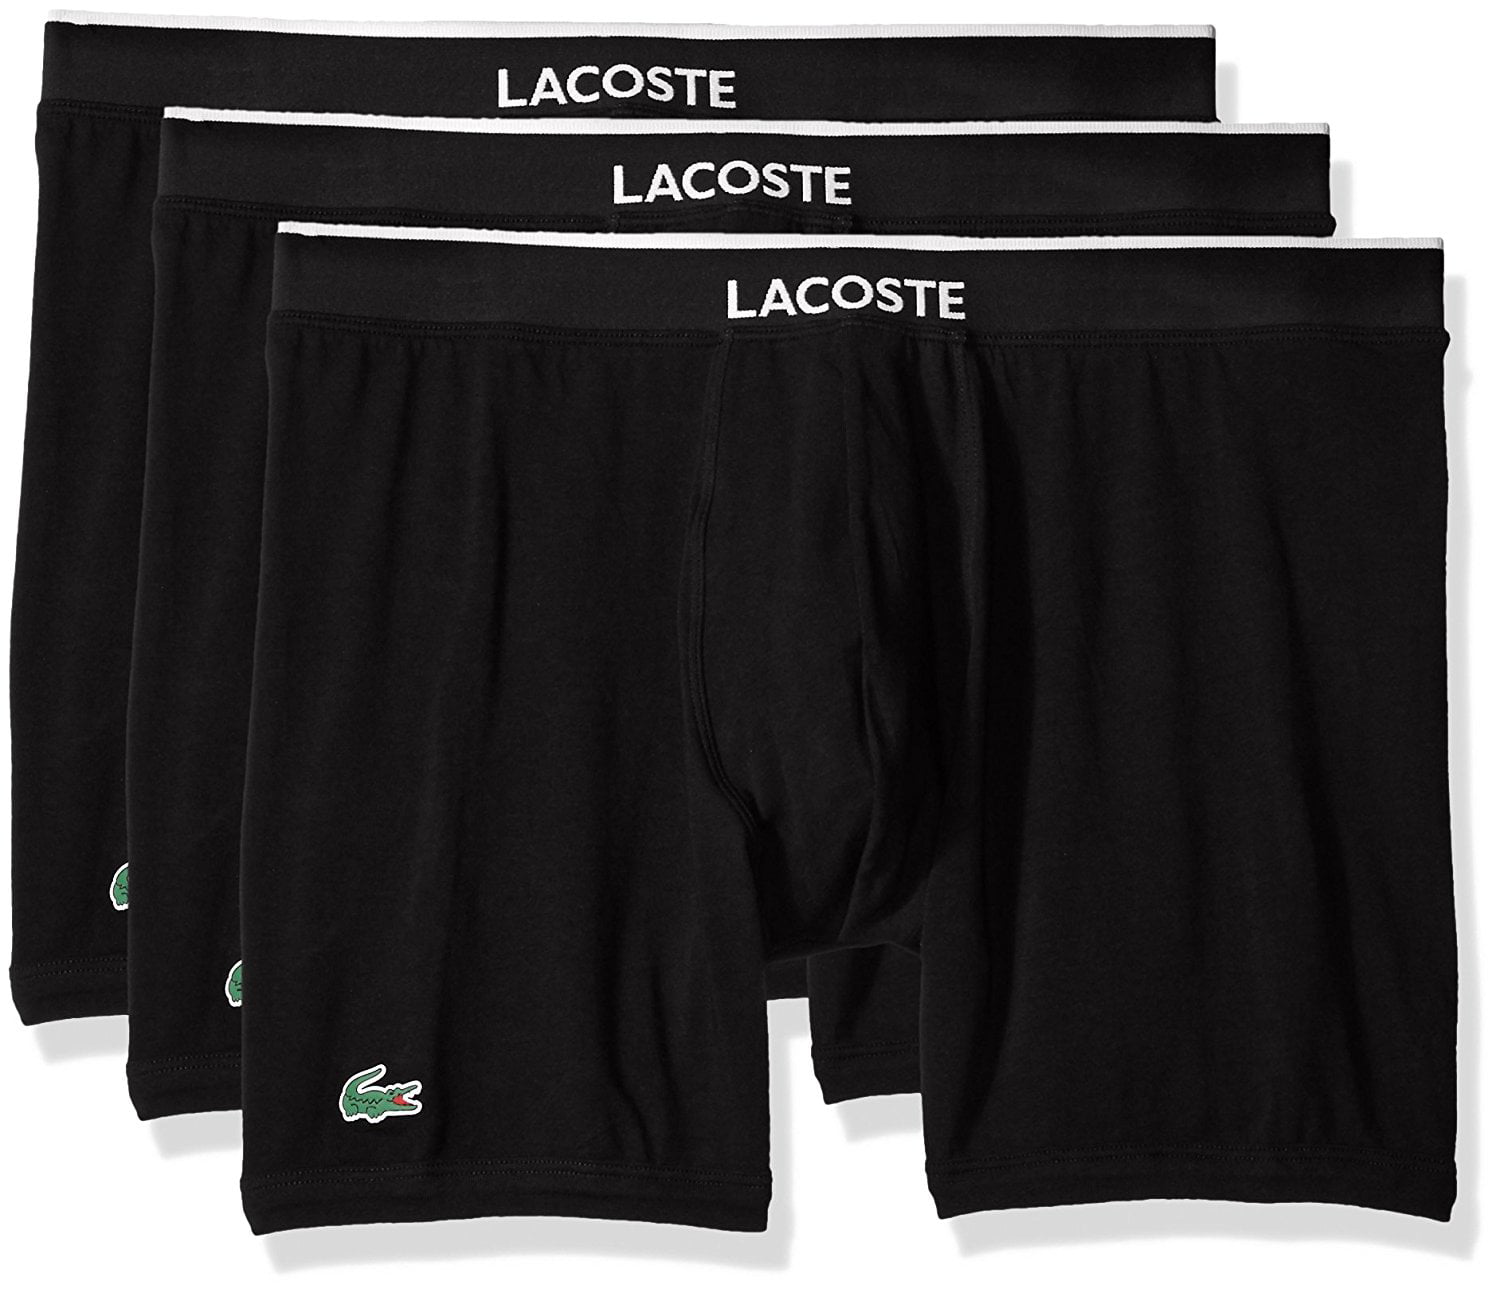 lacoste underwear price